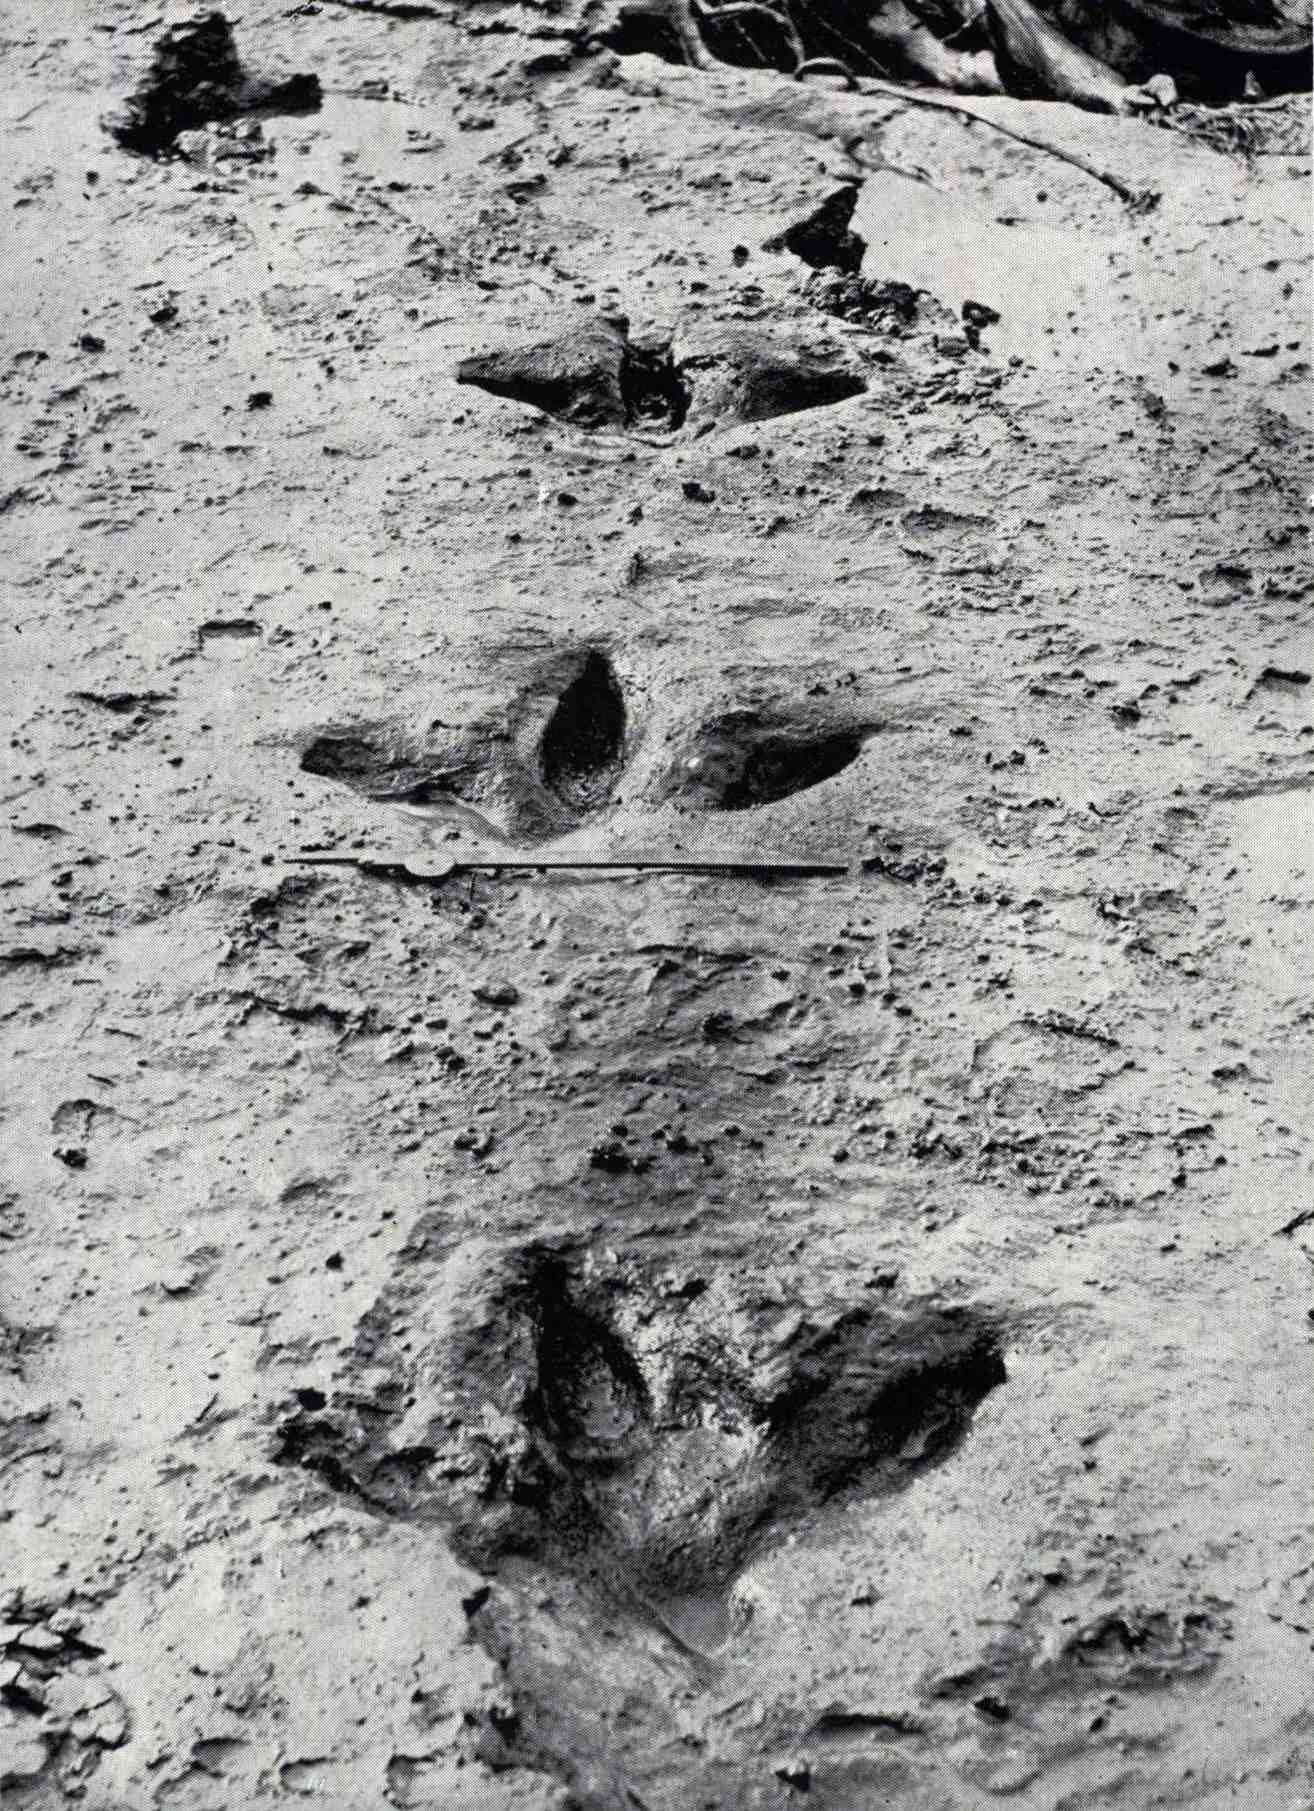 Ovi otisci stopala Dinornis robustus bili su izloženi u kolovozu 1911. kada je poplava rijeke Manawatū odnijela plavu glinu koja ih je prekrila i sačuvala. Oni pokazuju da je moa imao tri snažna prednja prsta usmjerena prema nogama i, za razliku od većine drugih ratita, mali stražnji prst.